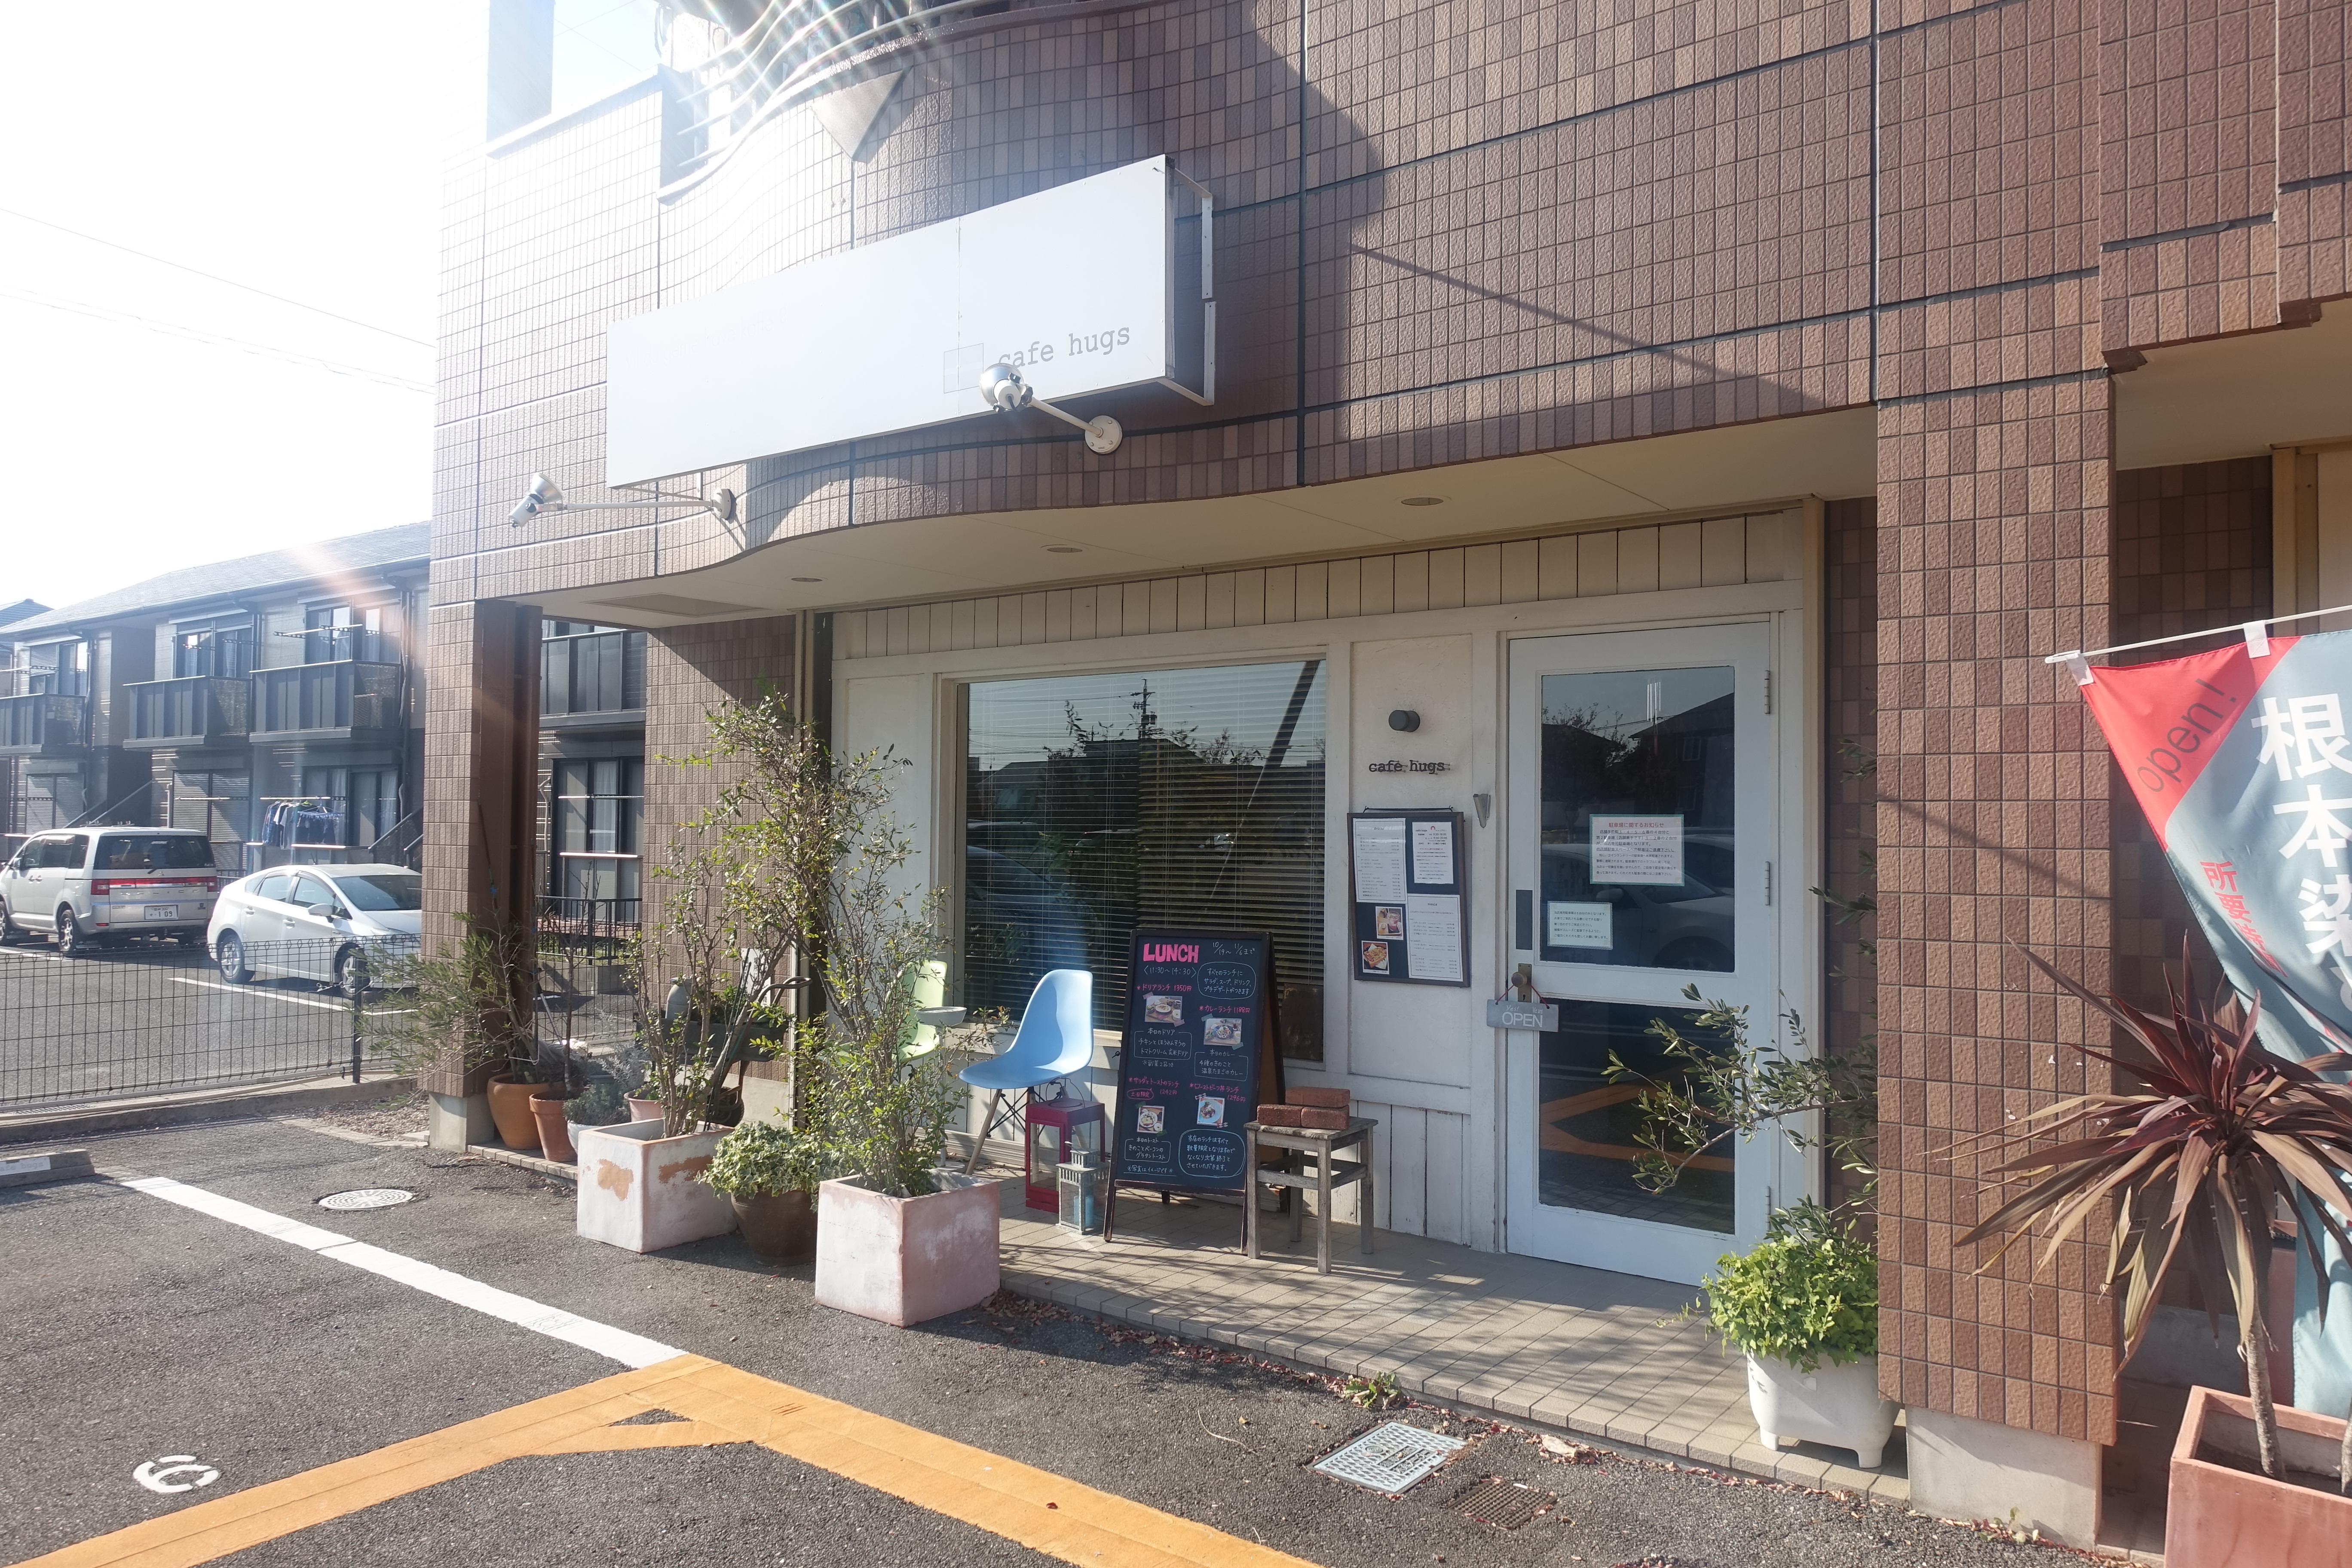 岡崎のカフェハグス Cafe Hugs ペット同伴可のおしゃれカフェ ランチも美味い 岡崎にゅーす